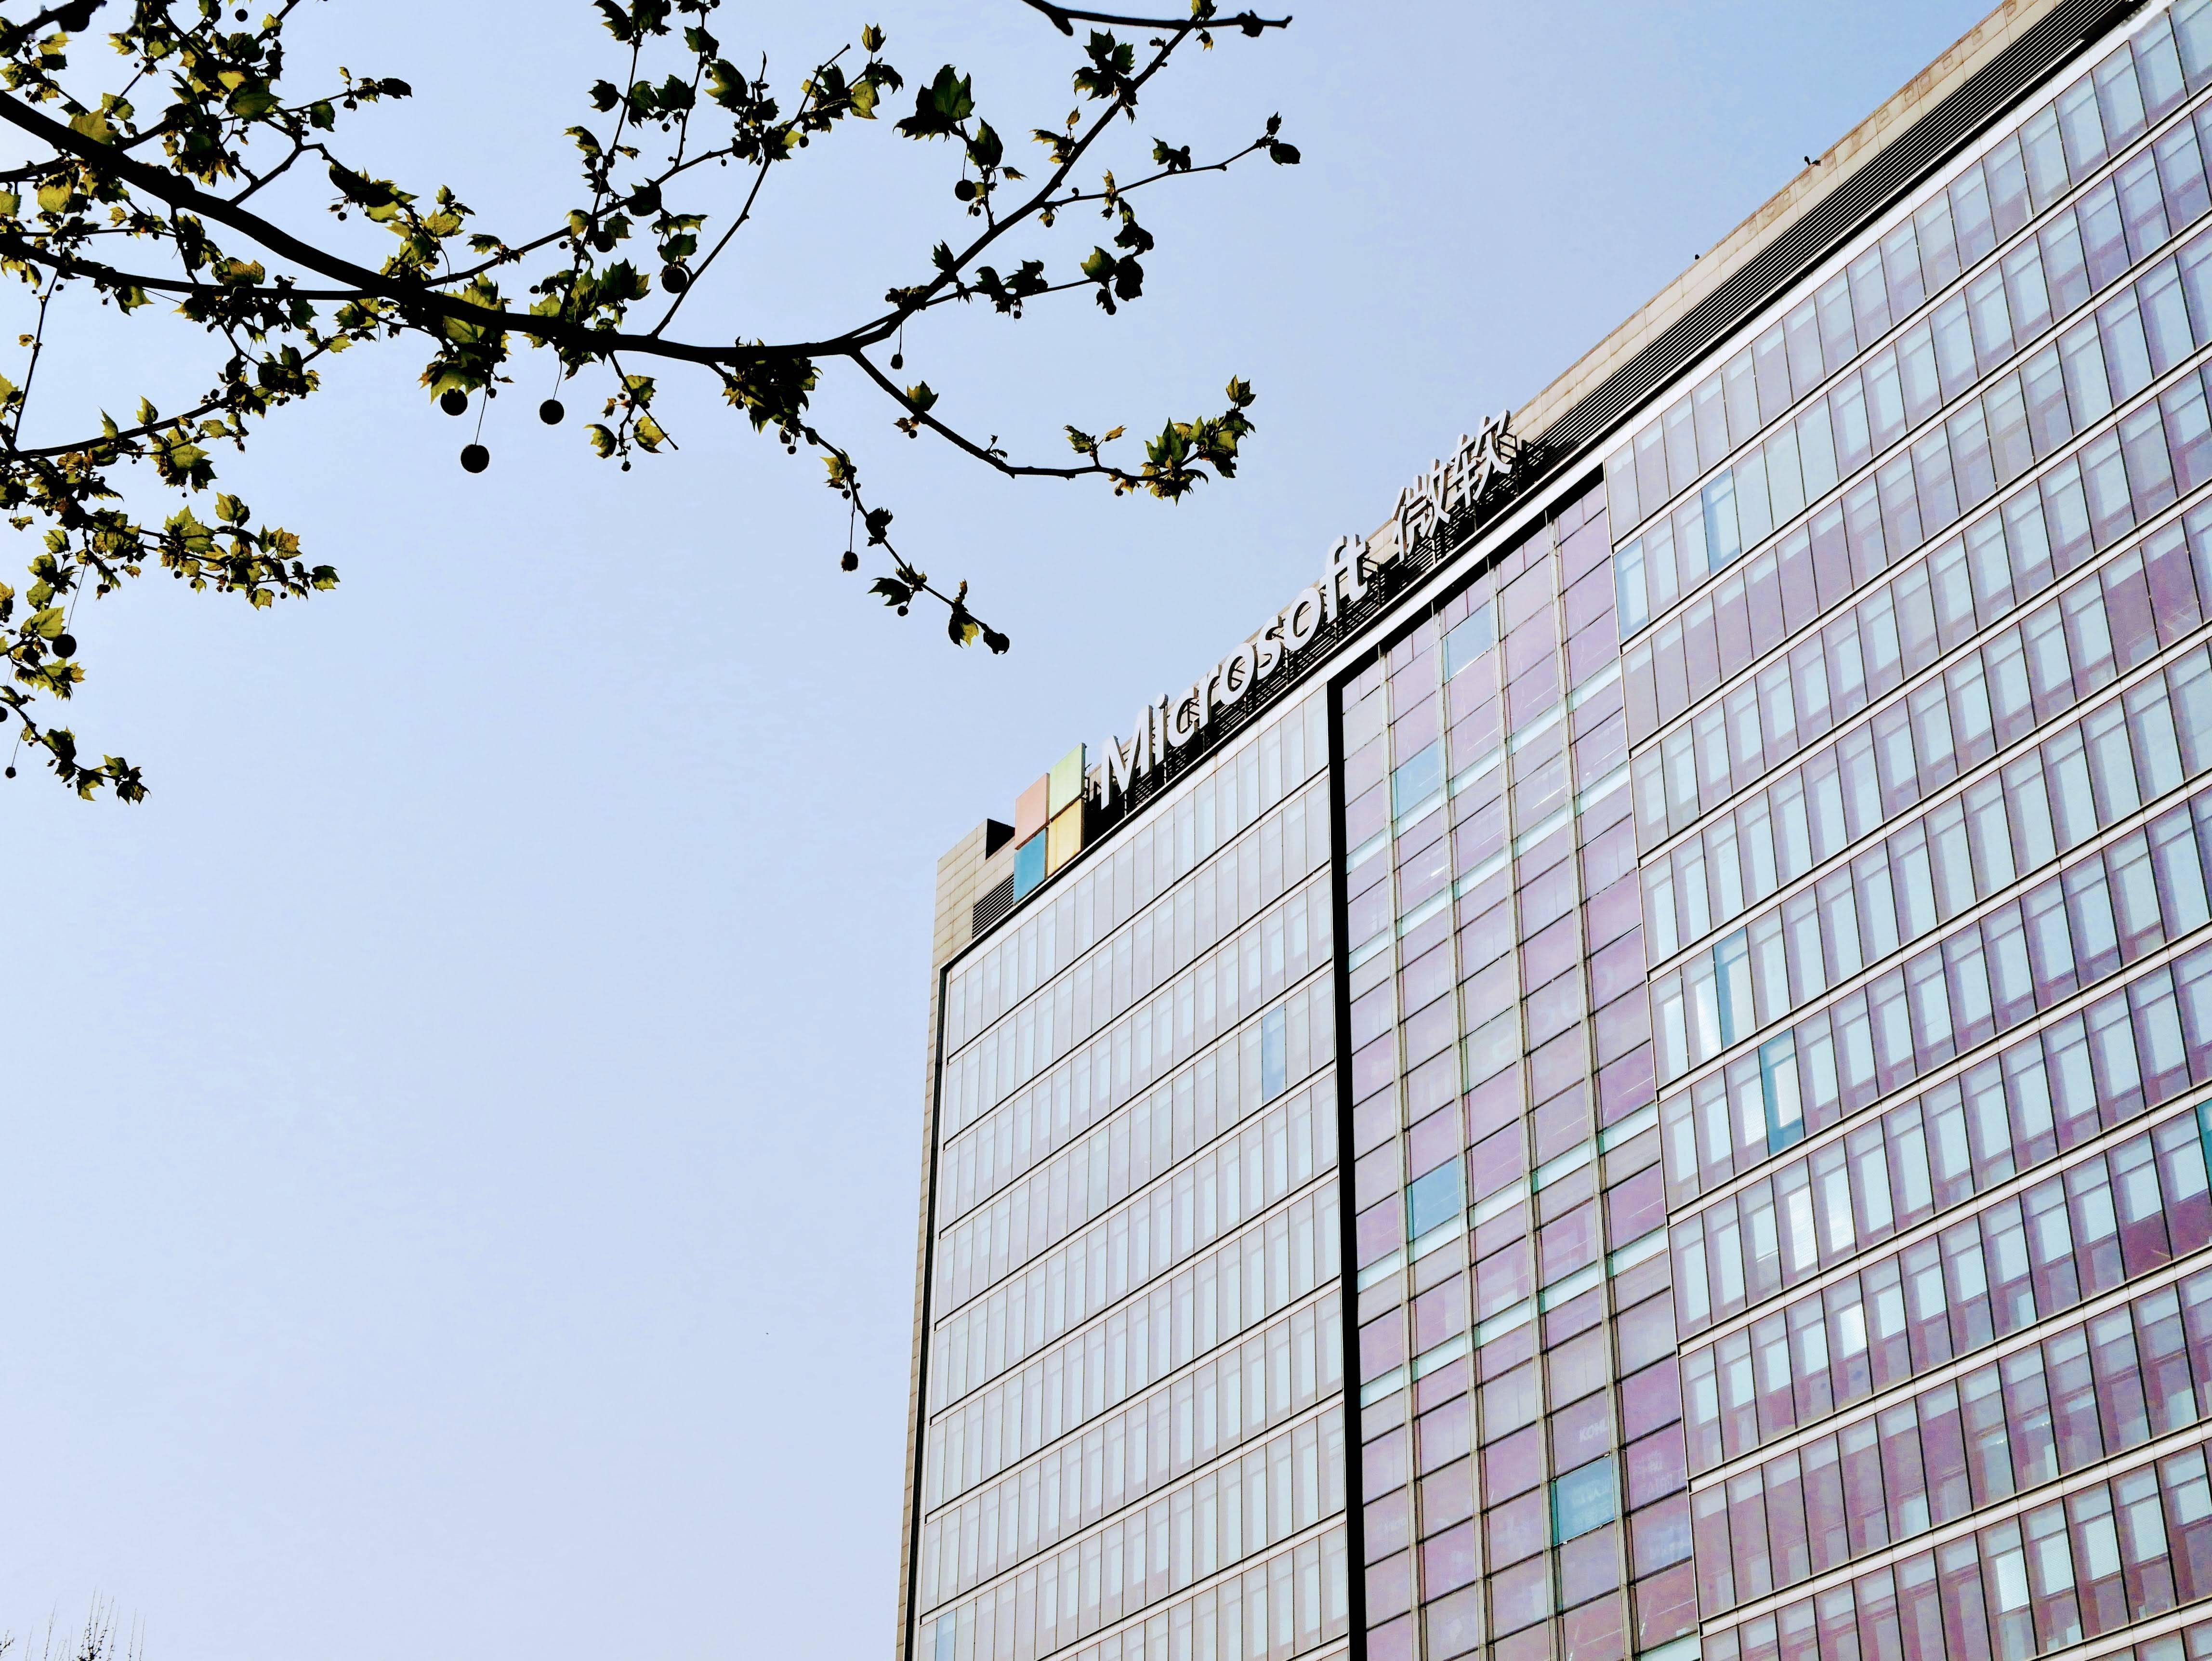 微软公司总部大楼图片